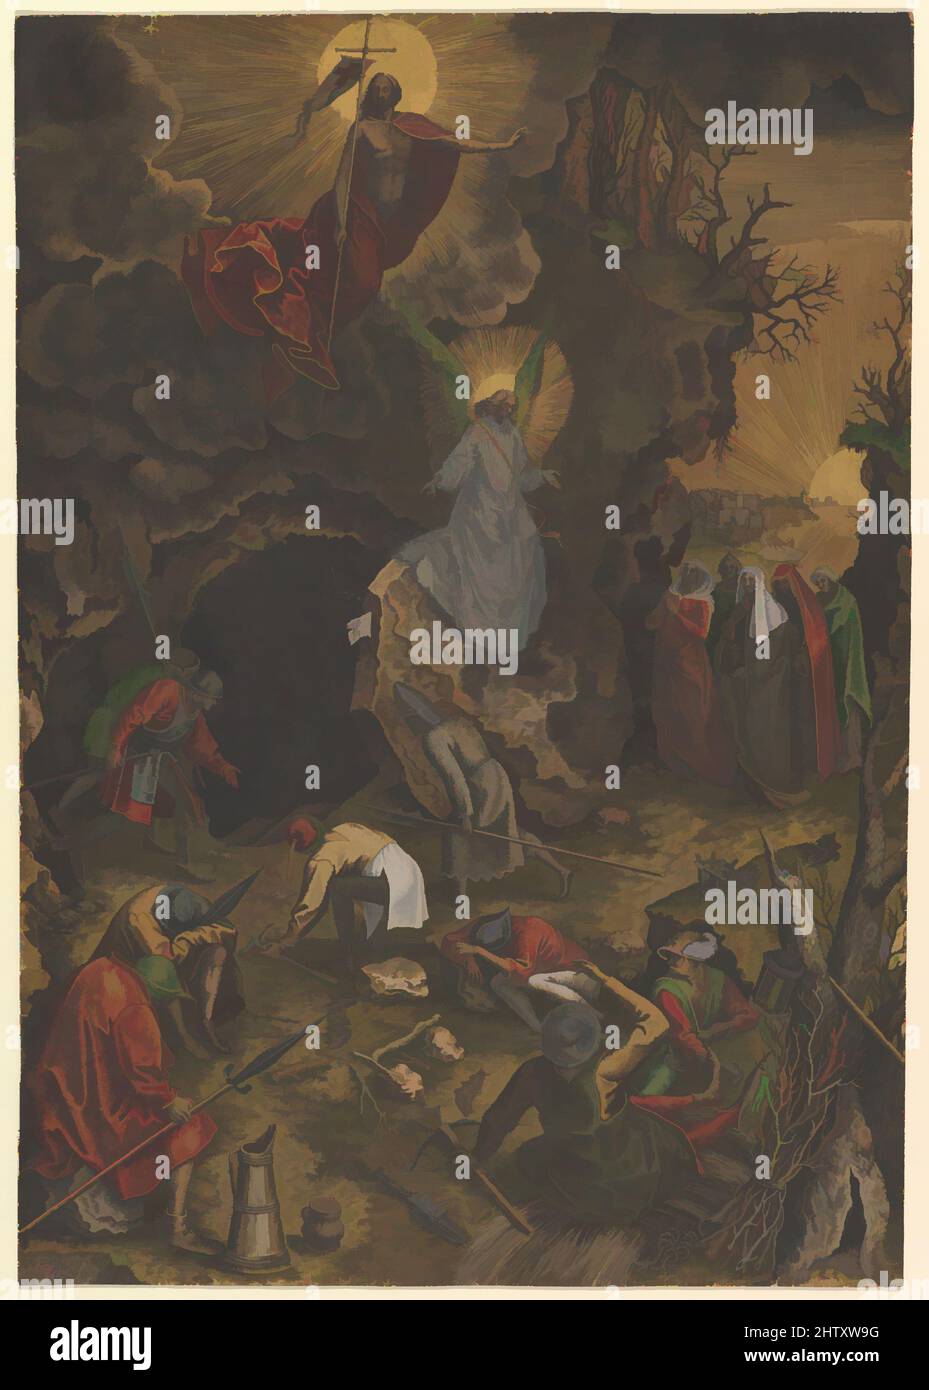 Arte ispirata alla Risurrezione, ca. 1562–63, incisione; primo stato di tre; colore a mano in oro, rosso, verde blu giallo, marrone e bianco., foglio: 16 7/8 x 11 3/4 pollici (42,8 x 29,9 cm), Prints, Philips Galle (Olanda, Haarlem 1537–1612 Anversa), Pieter Bruegel The Elder (, opere classiche modernizzate da Artotop con un tocco di modernità. Forme, colore e valore, impatto visivo accattivante sulle emozioni artistiche attraverso la libertà delle opere d'arte in modo contemporaneo. Un messaggio senza tempo che persegue una nuova direzione selvaggiamente creativa. Artisti che si rivolgono al supporto digitale e creano l'NFT Artotop Foto Stock